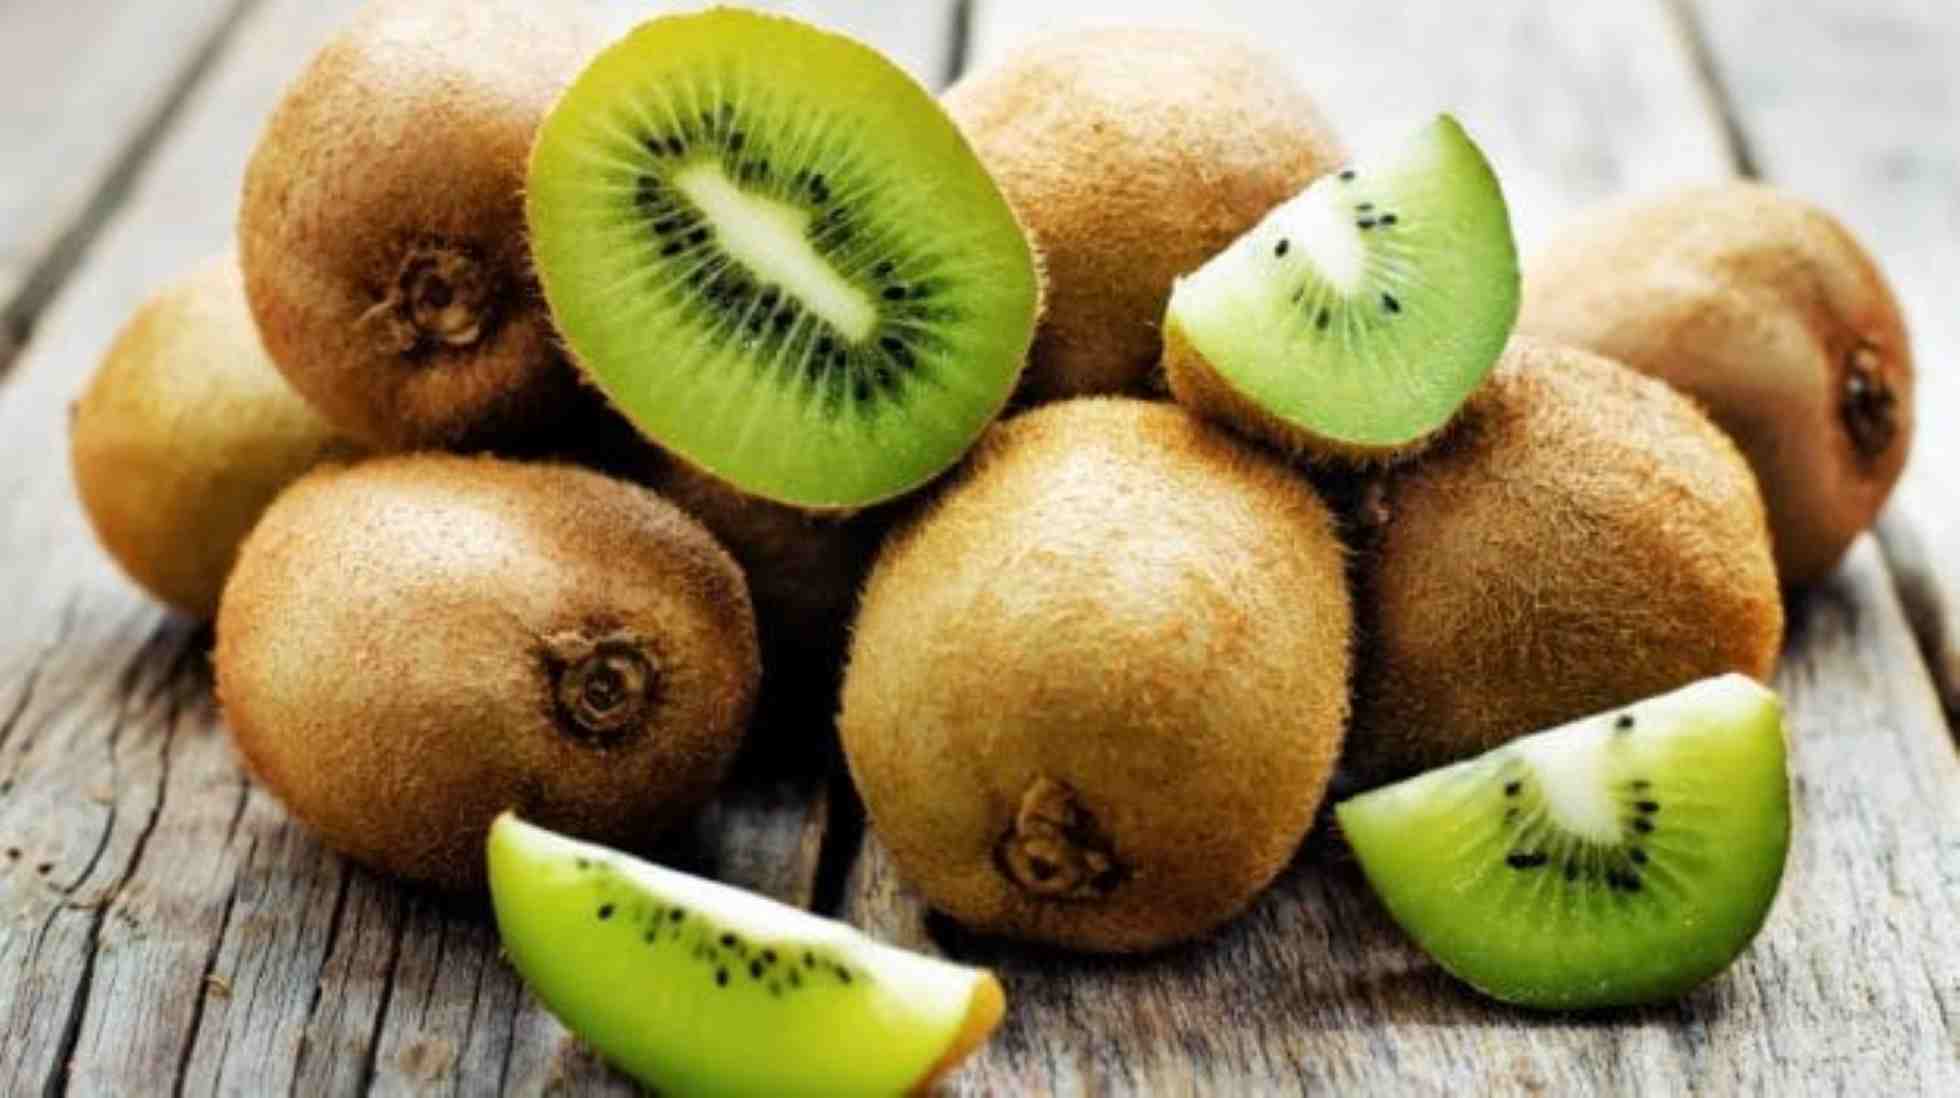 Come far fruttificare i kiwi?